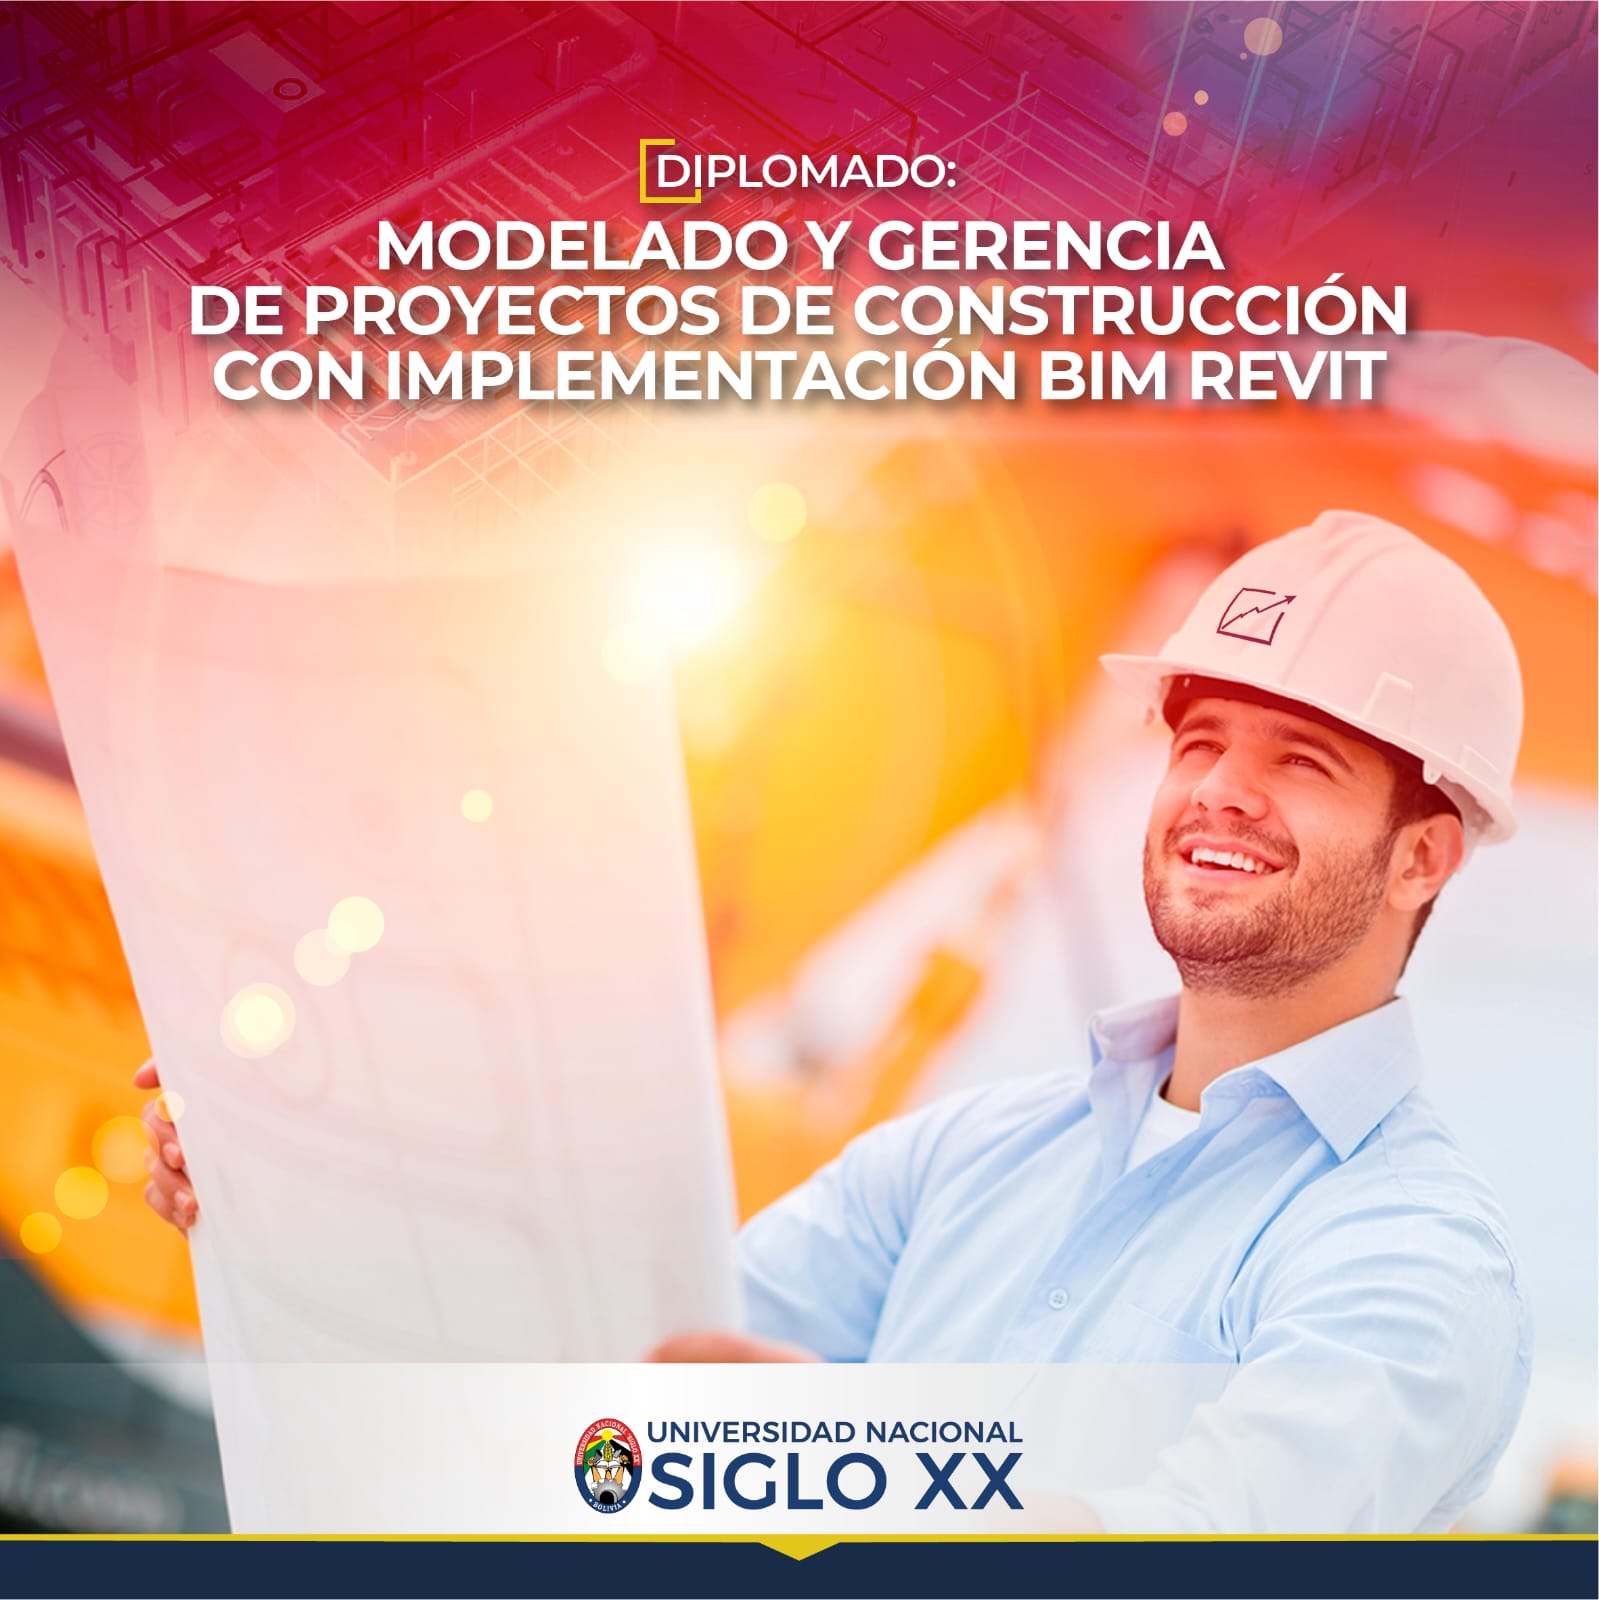 Diplomado MODELADO Y GERENCIA DE PROYECTOS DE CONSTRUCCIÓN CON IMPLEMENTACIÓN BIM REVIT